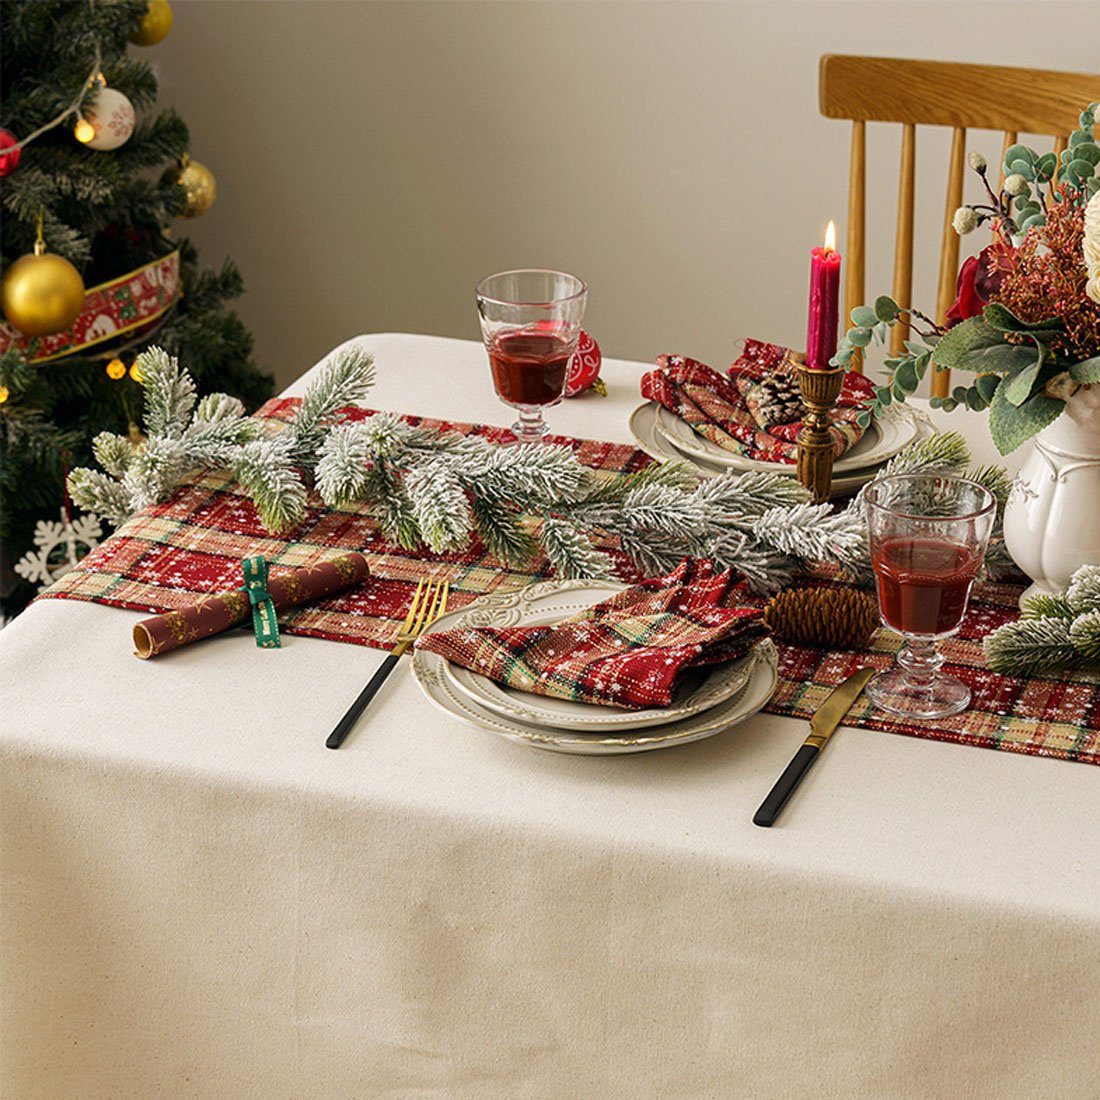 Weihnachtsdekoration Tischfahnen Tischläufer DÖRÖY Tischläufer, festliche 40*200cm bedruckter